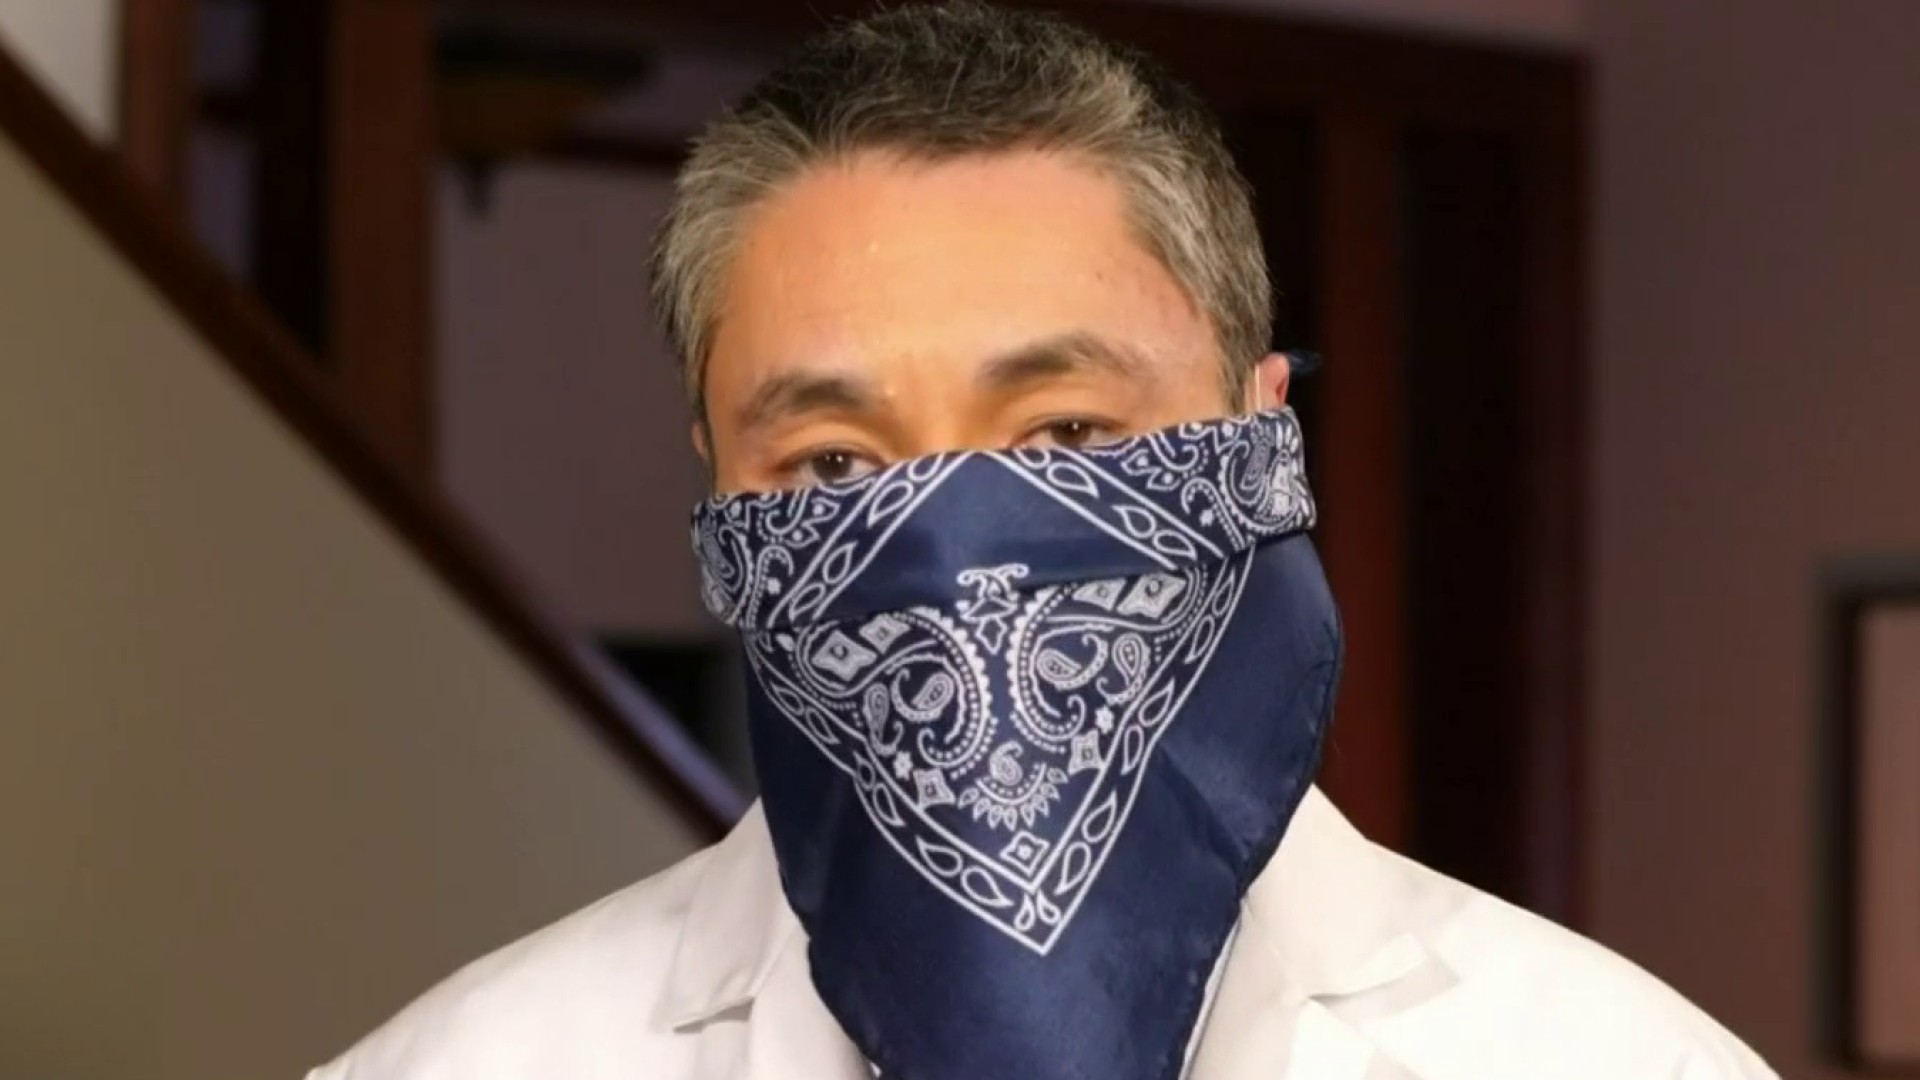 Monogram Tapestry Bandana Mask - Clothing the Pandemic